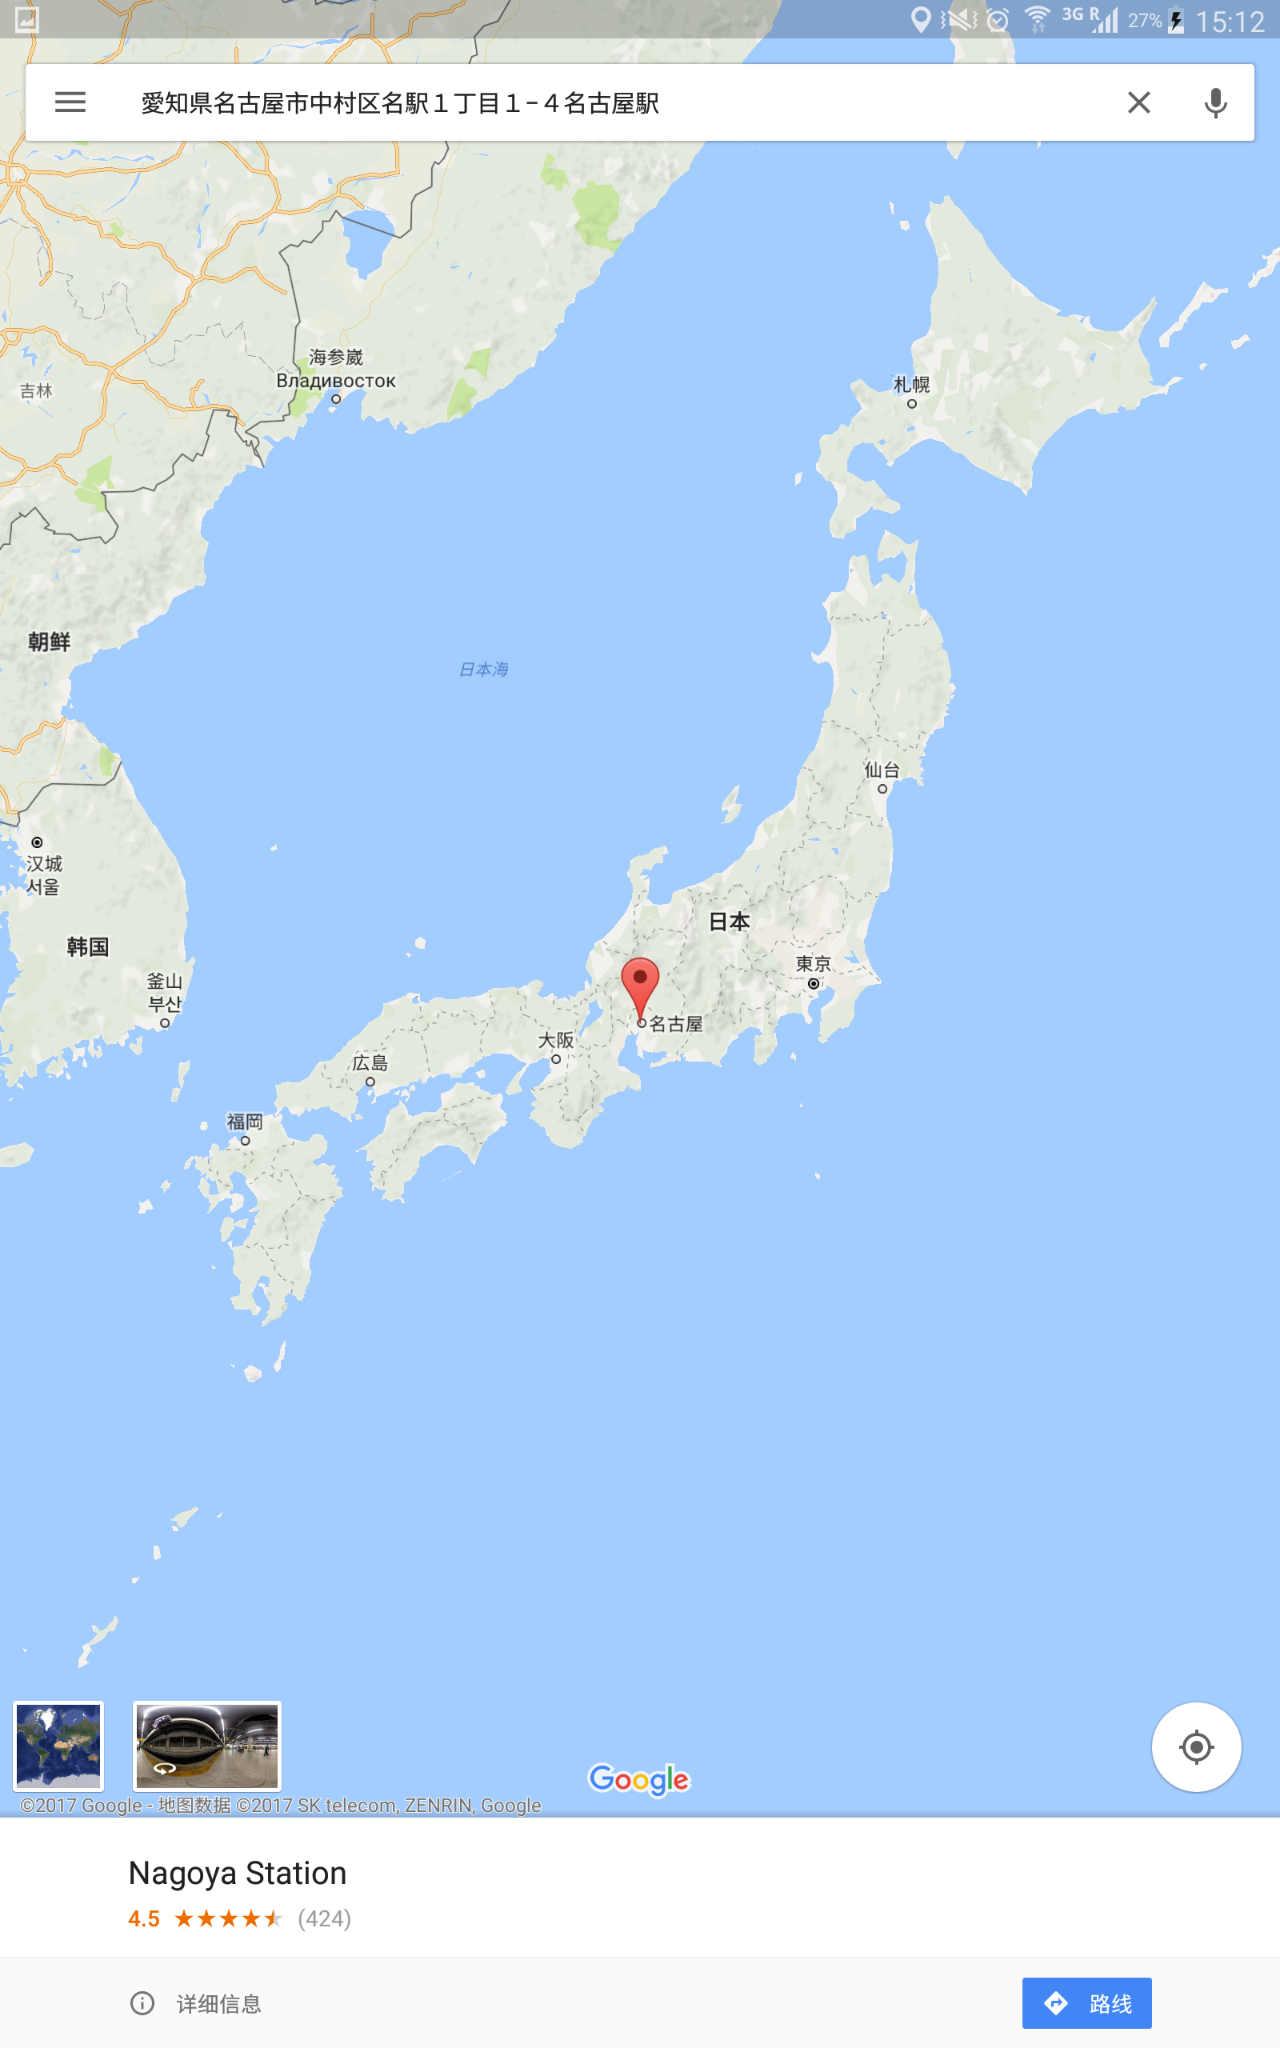 【技术帖】日本自由行,如何用谷歌地图规划日程